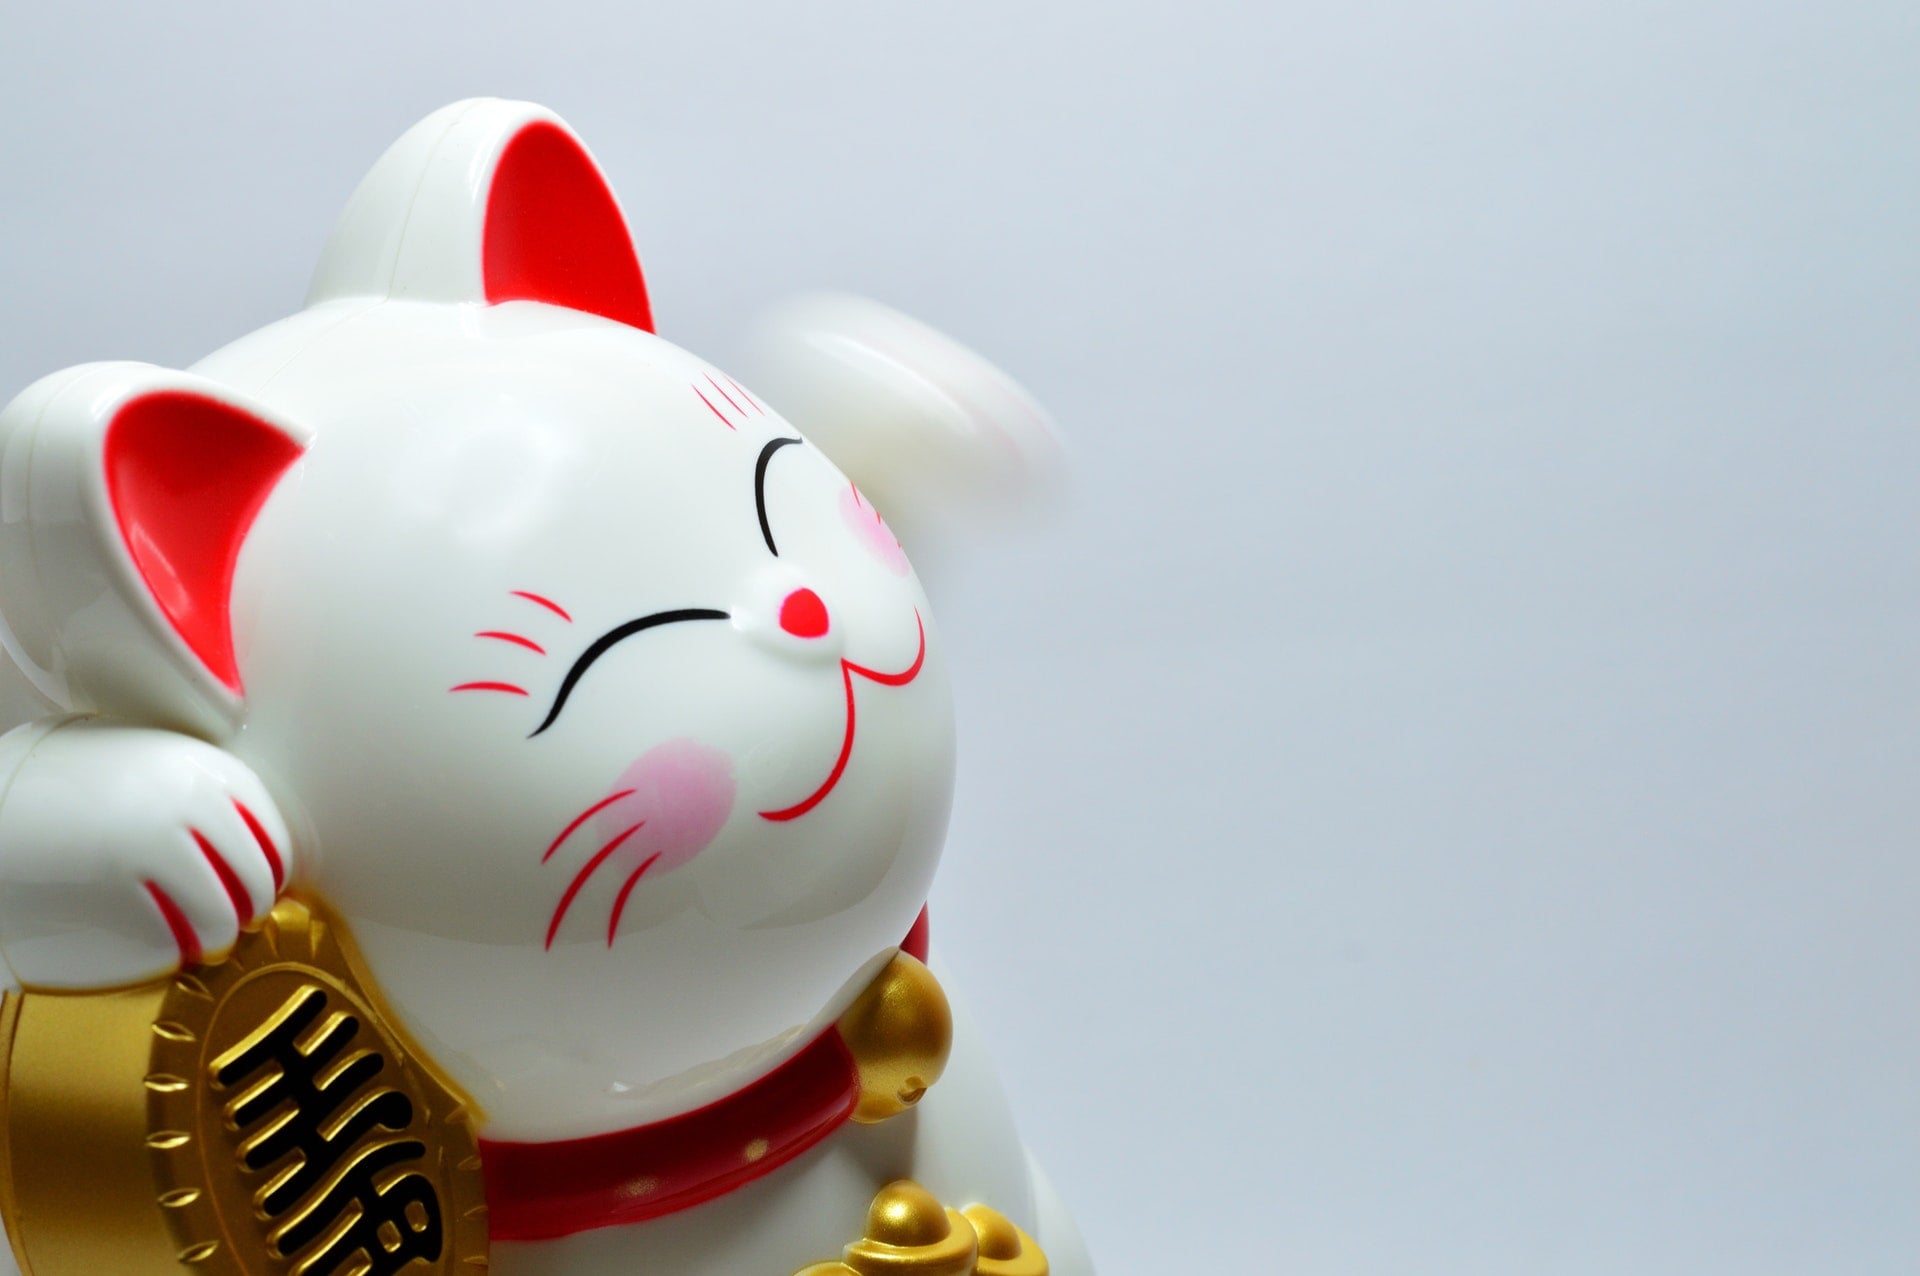 108年5、6月統一發票號碼獎中獎號碼 2019 japanese lucky coin cat